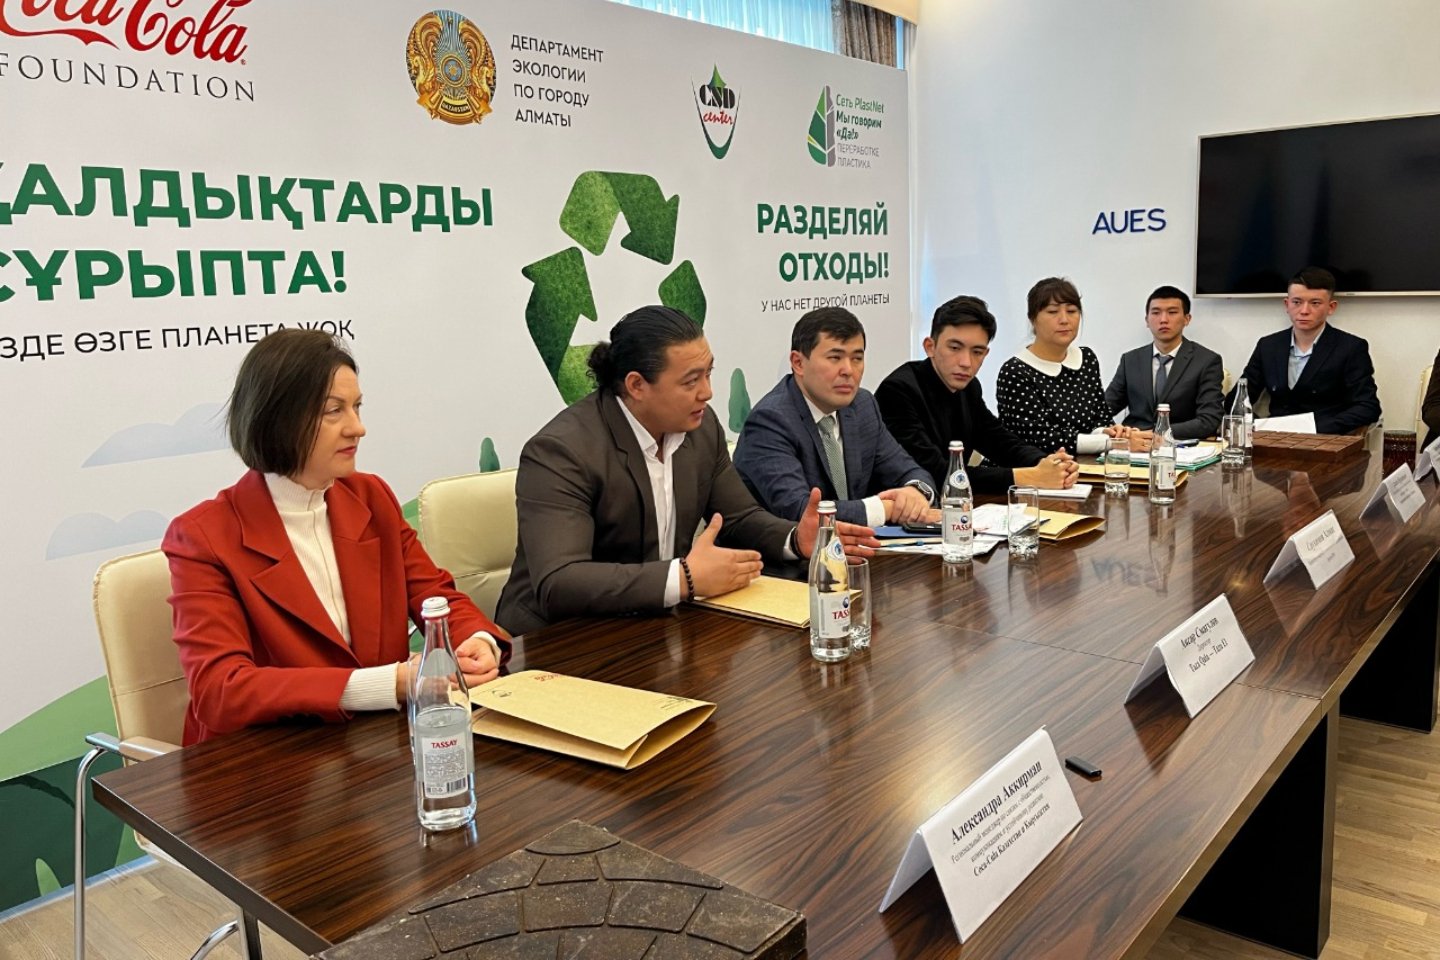 Партнерские материалы / В крупных вузах Алматы реализуется проект по раздельному сбору отходов